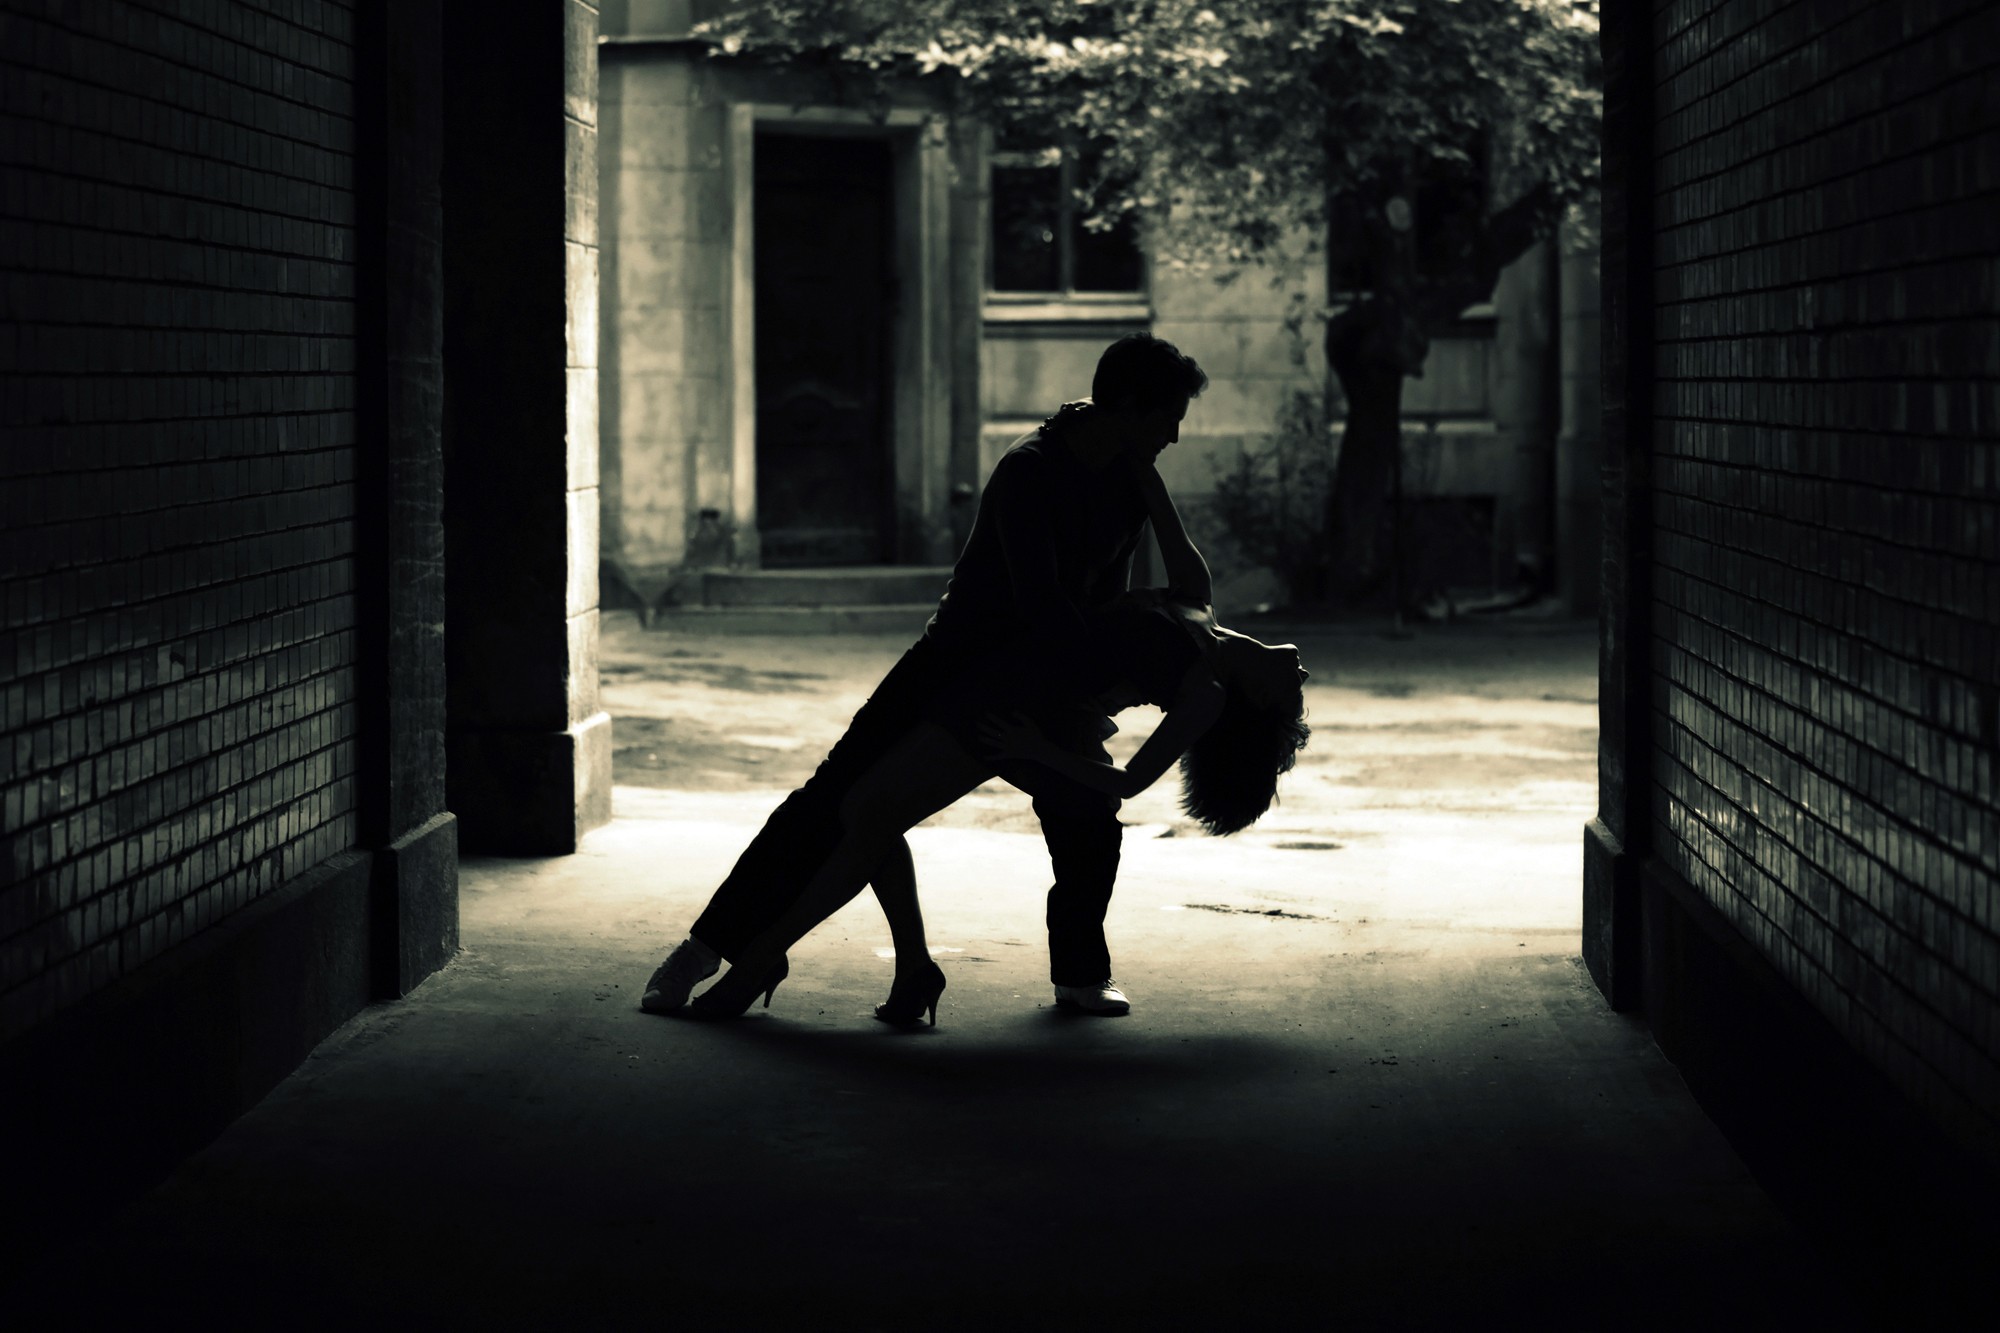 Читать шаг в тень. Парень в переулке. Силуэт переулка. Танцы в темноте. Мужчина в темноте на улице.